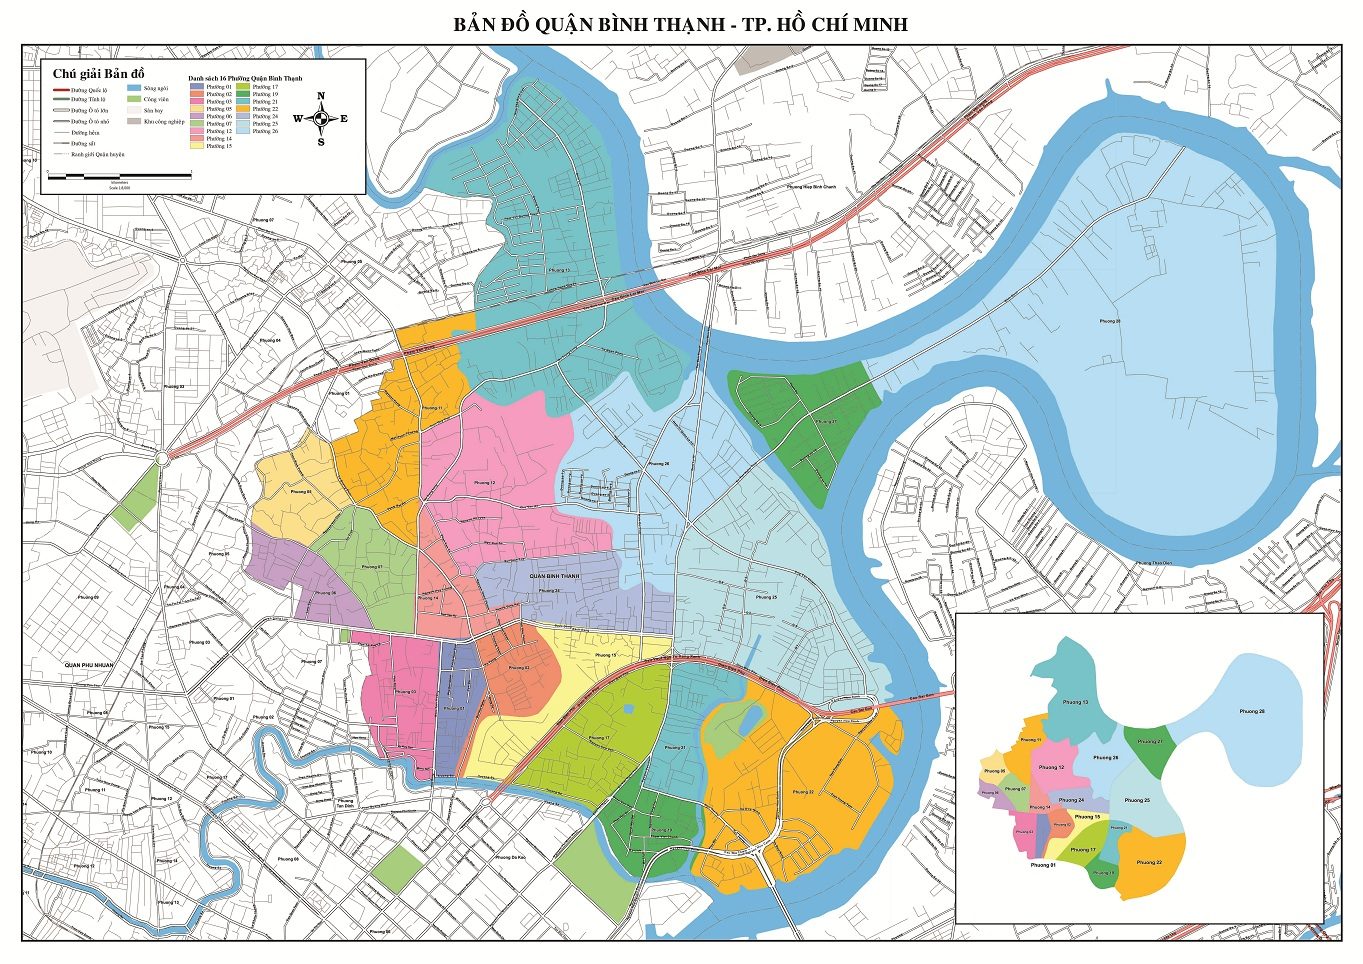 [Update] Bản đồ Hành chính Quận Bình Thạnh tại TPHCM khổ lớn 5